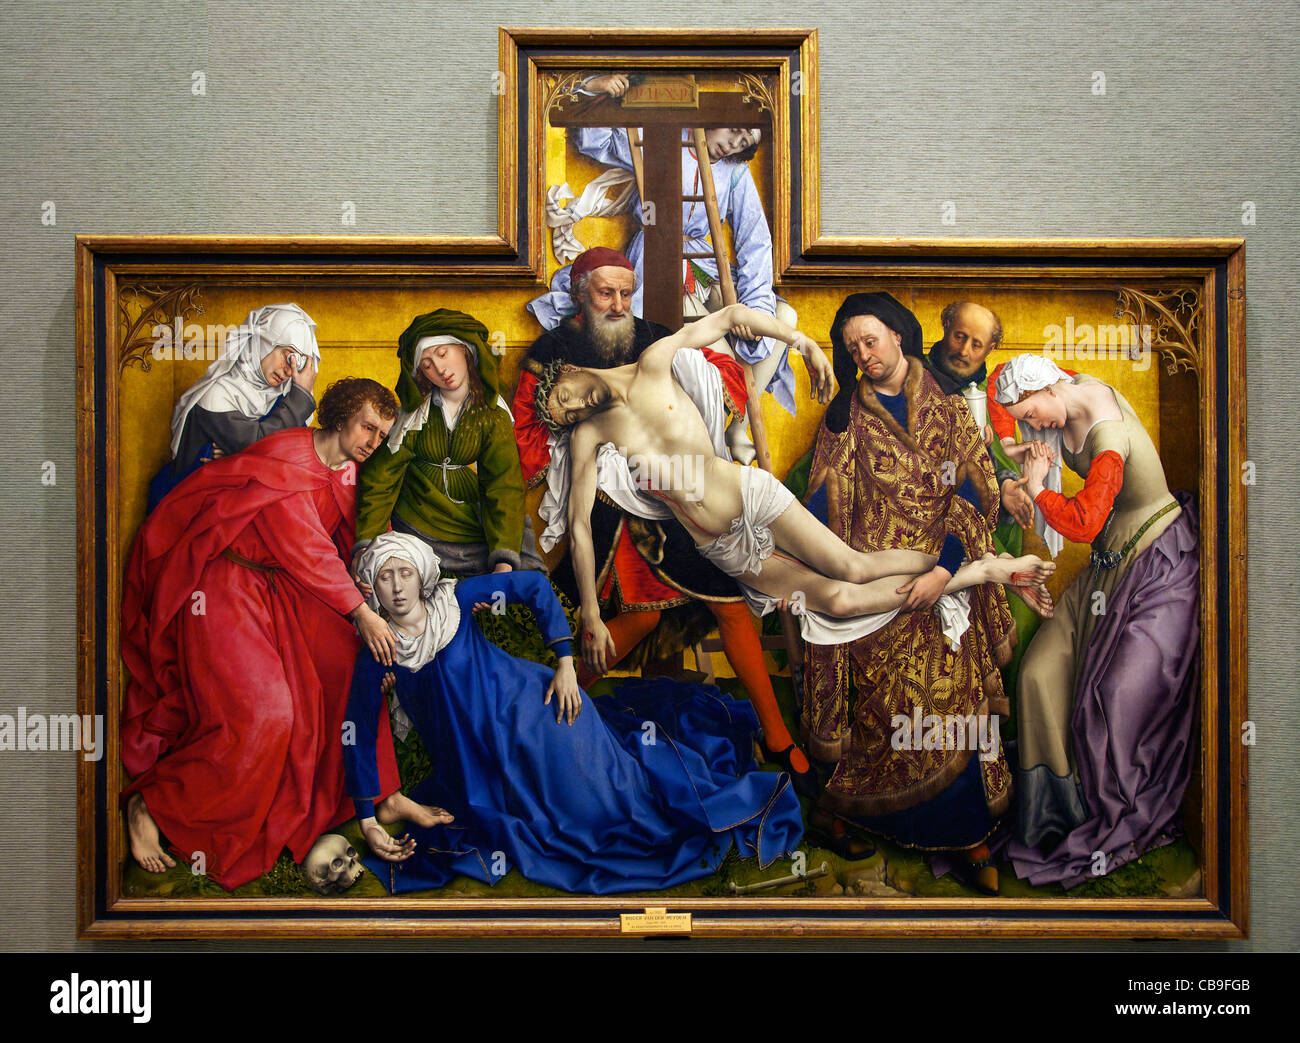 La deposizione, Discesa dalla Croce, Rogier van der Weyden, circa 1435, Museo Nacional del Prado, Madrid, Spagna Foto Stock